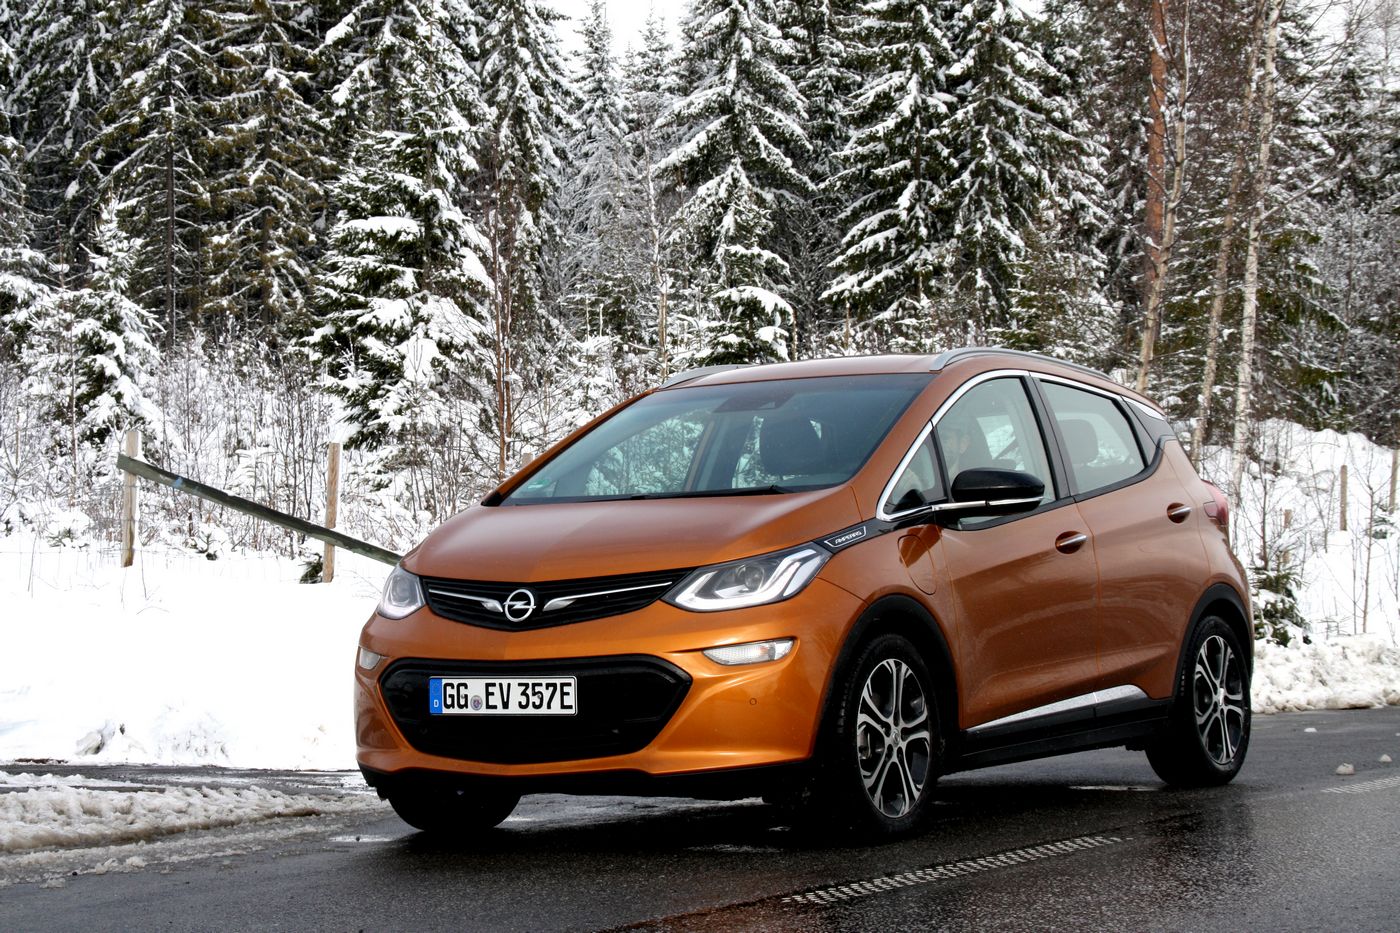 Essai Opel Ampera-e : une nouvelle ère pour la voiture électrique !